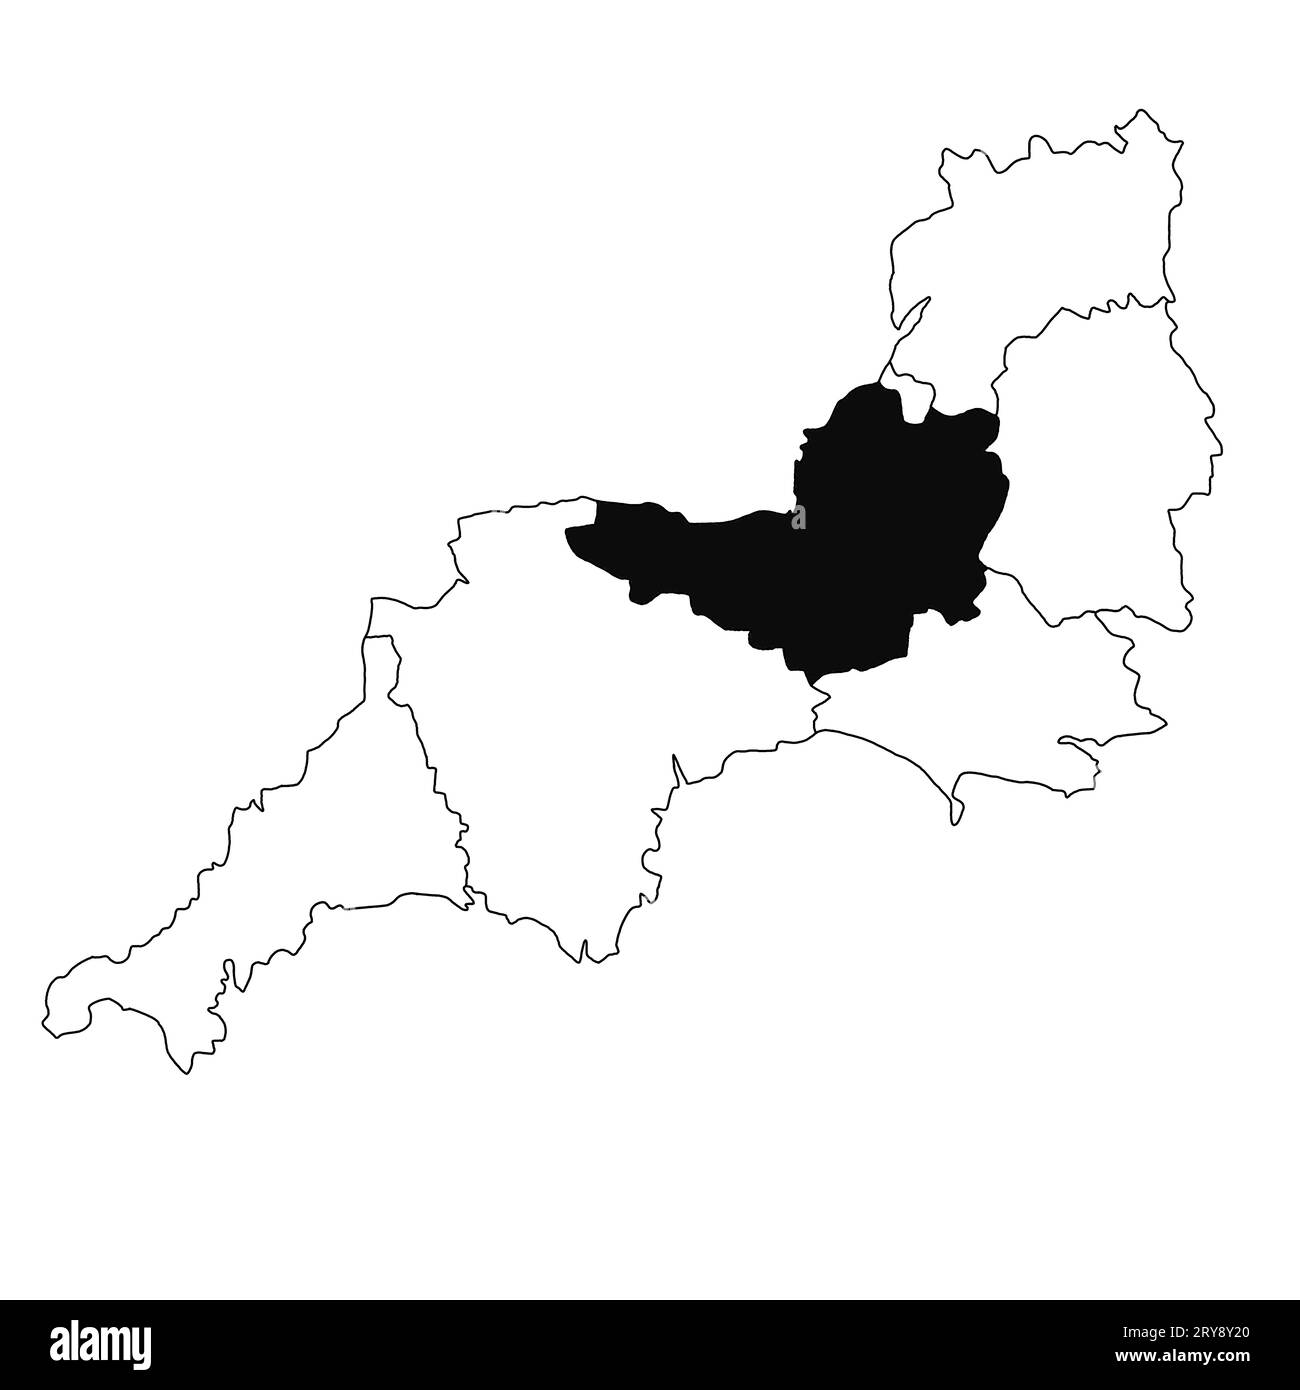 Carte du Somerset dans la province du sud-ouest de l'Angleterre sur fond blanc. Carte du comté unique mise en évidence par la couleur noire sur le sud-ouest de l'Angleterre administrative Banque D'Images